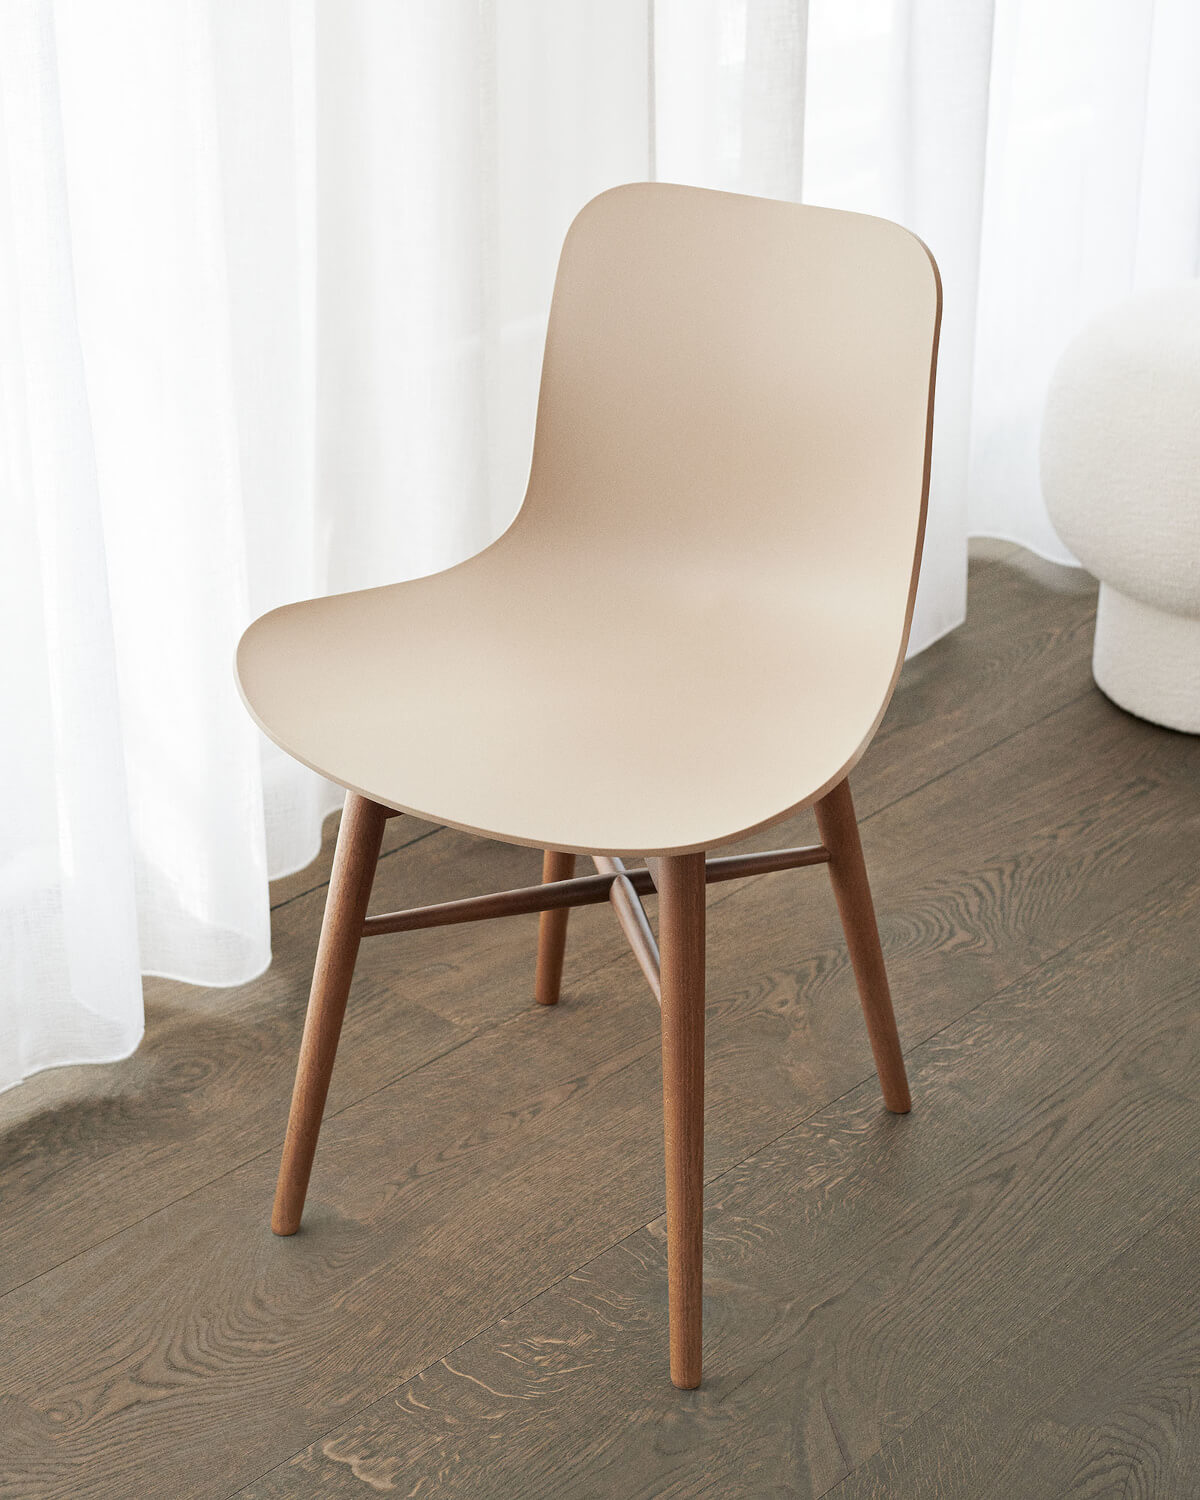 Langue Chair Wood, eiche natur / dunes dark brown 21001